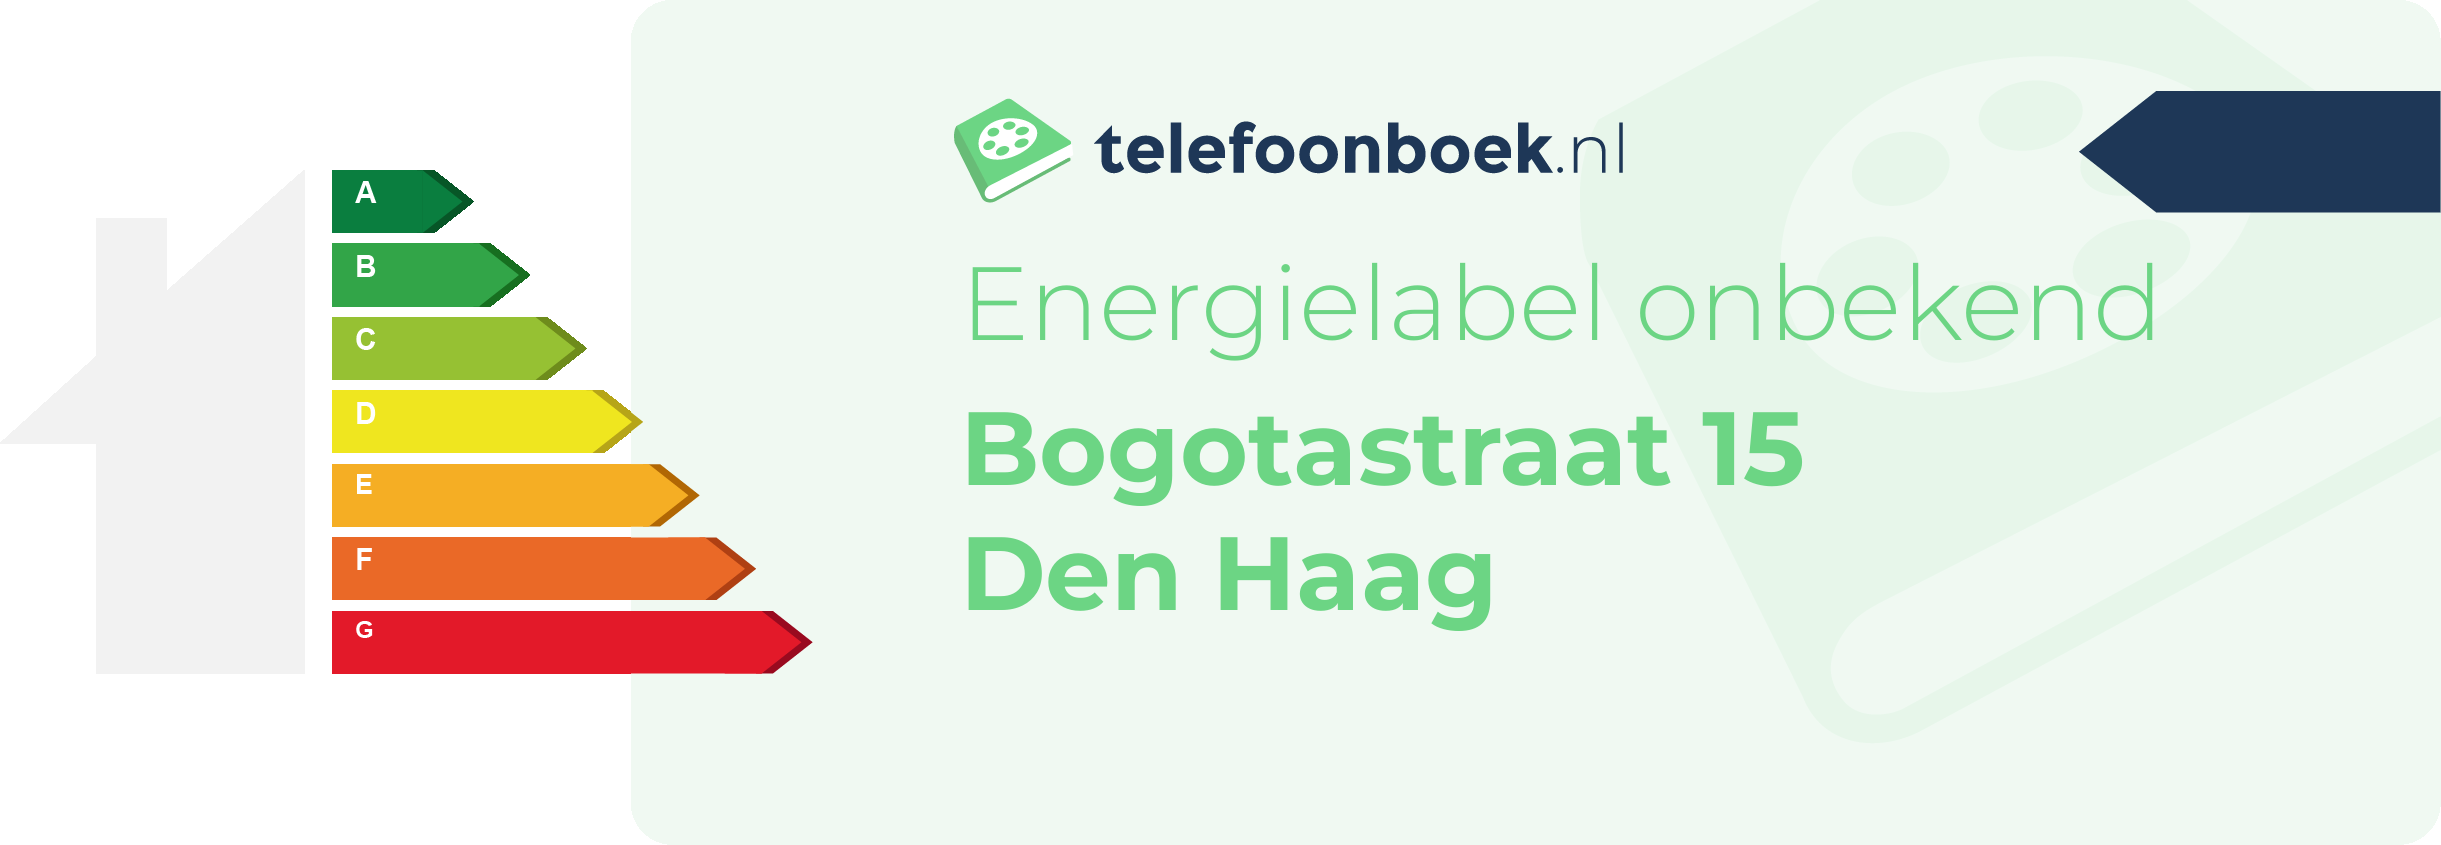 Energielabel Bogotastraat 15 Den Haag